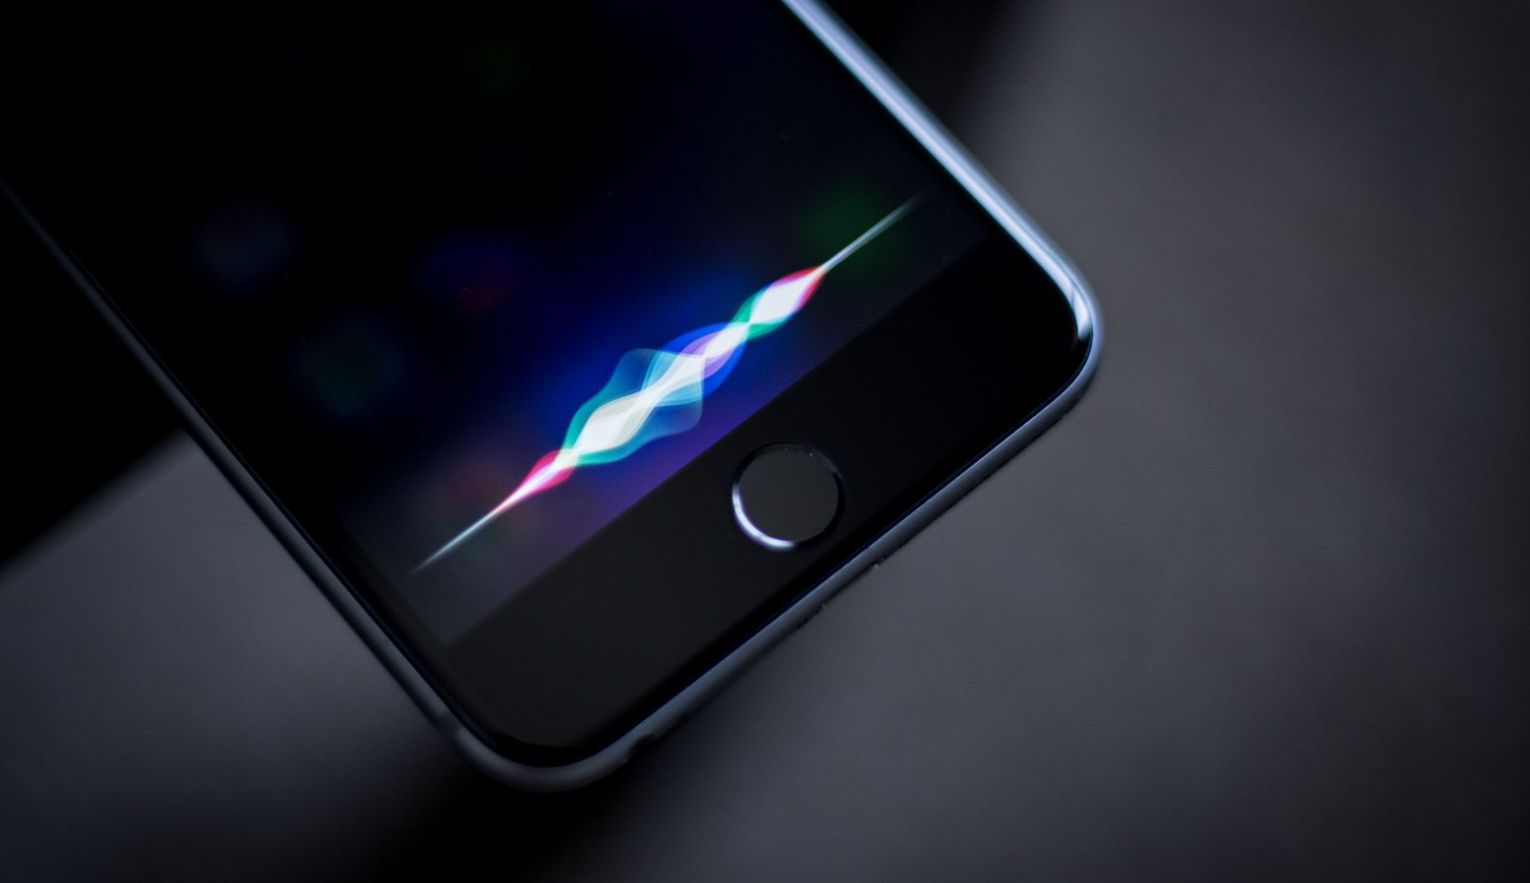 Bloomberg: Apple on hakanud tootma Siri kõlareid, mis on esindatud WWDC-s ja millel on tipptasemel helitehnoloogia